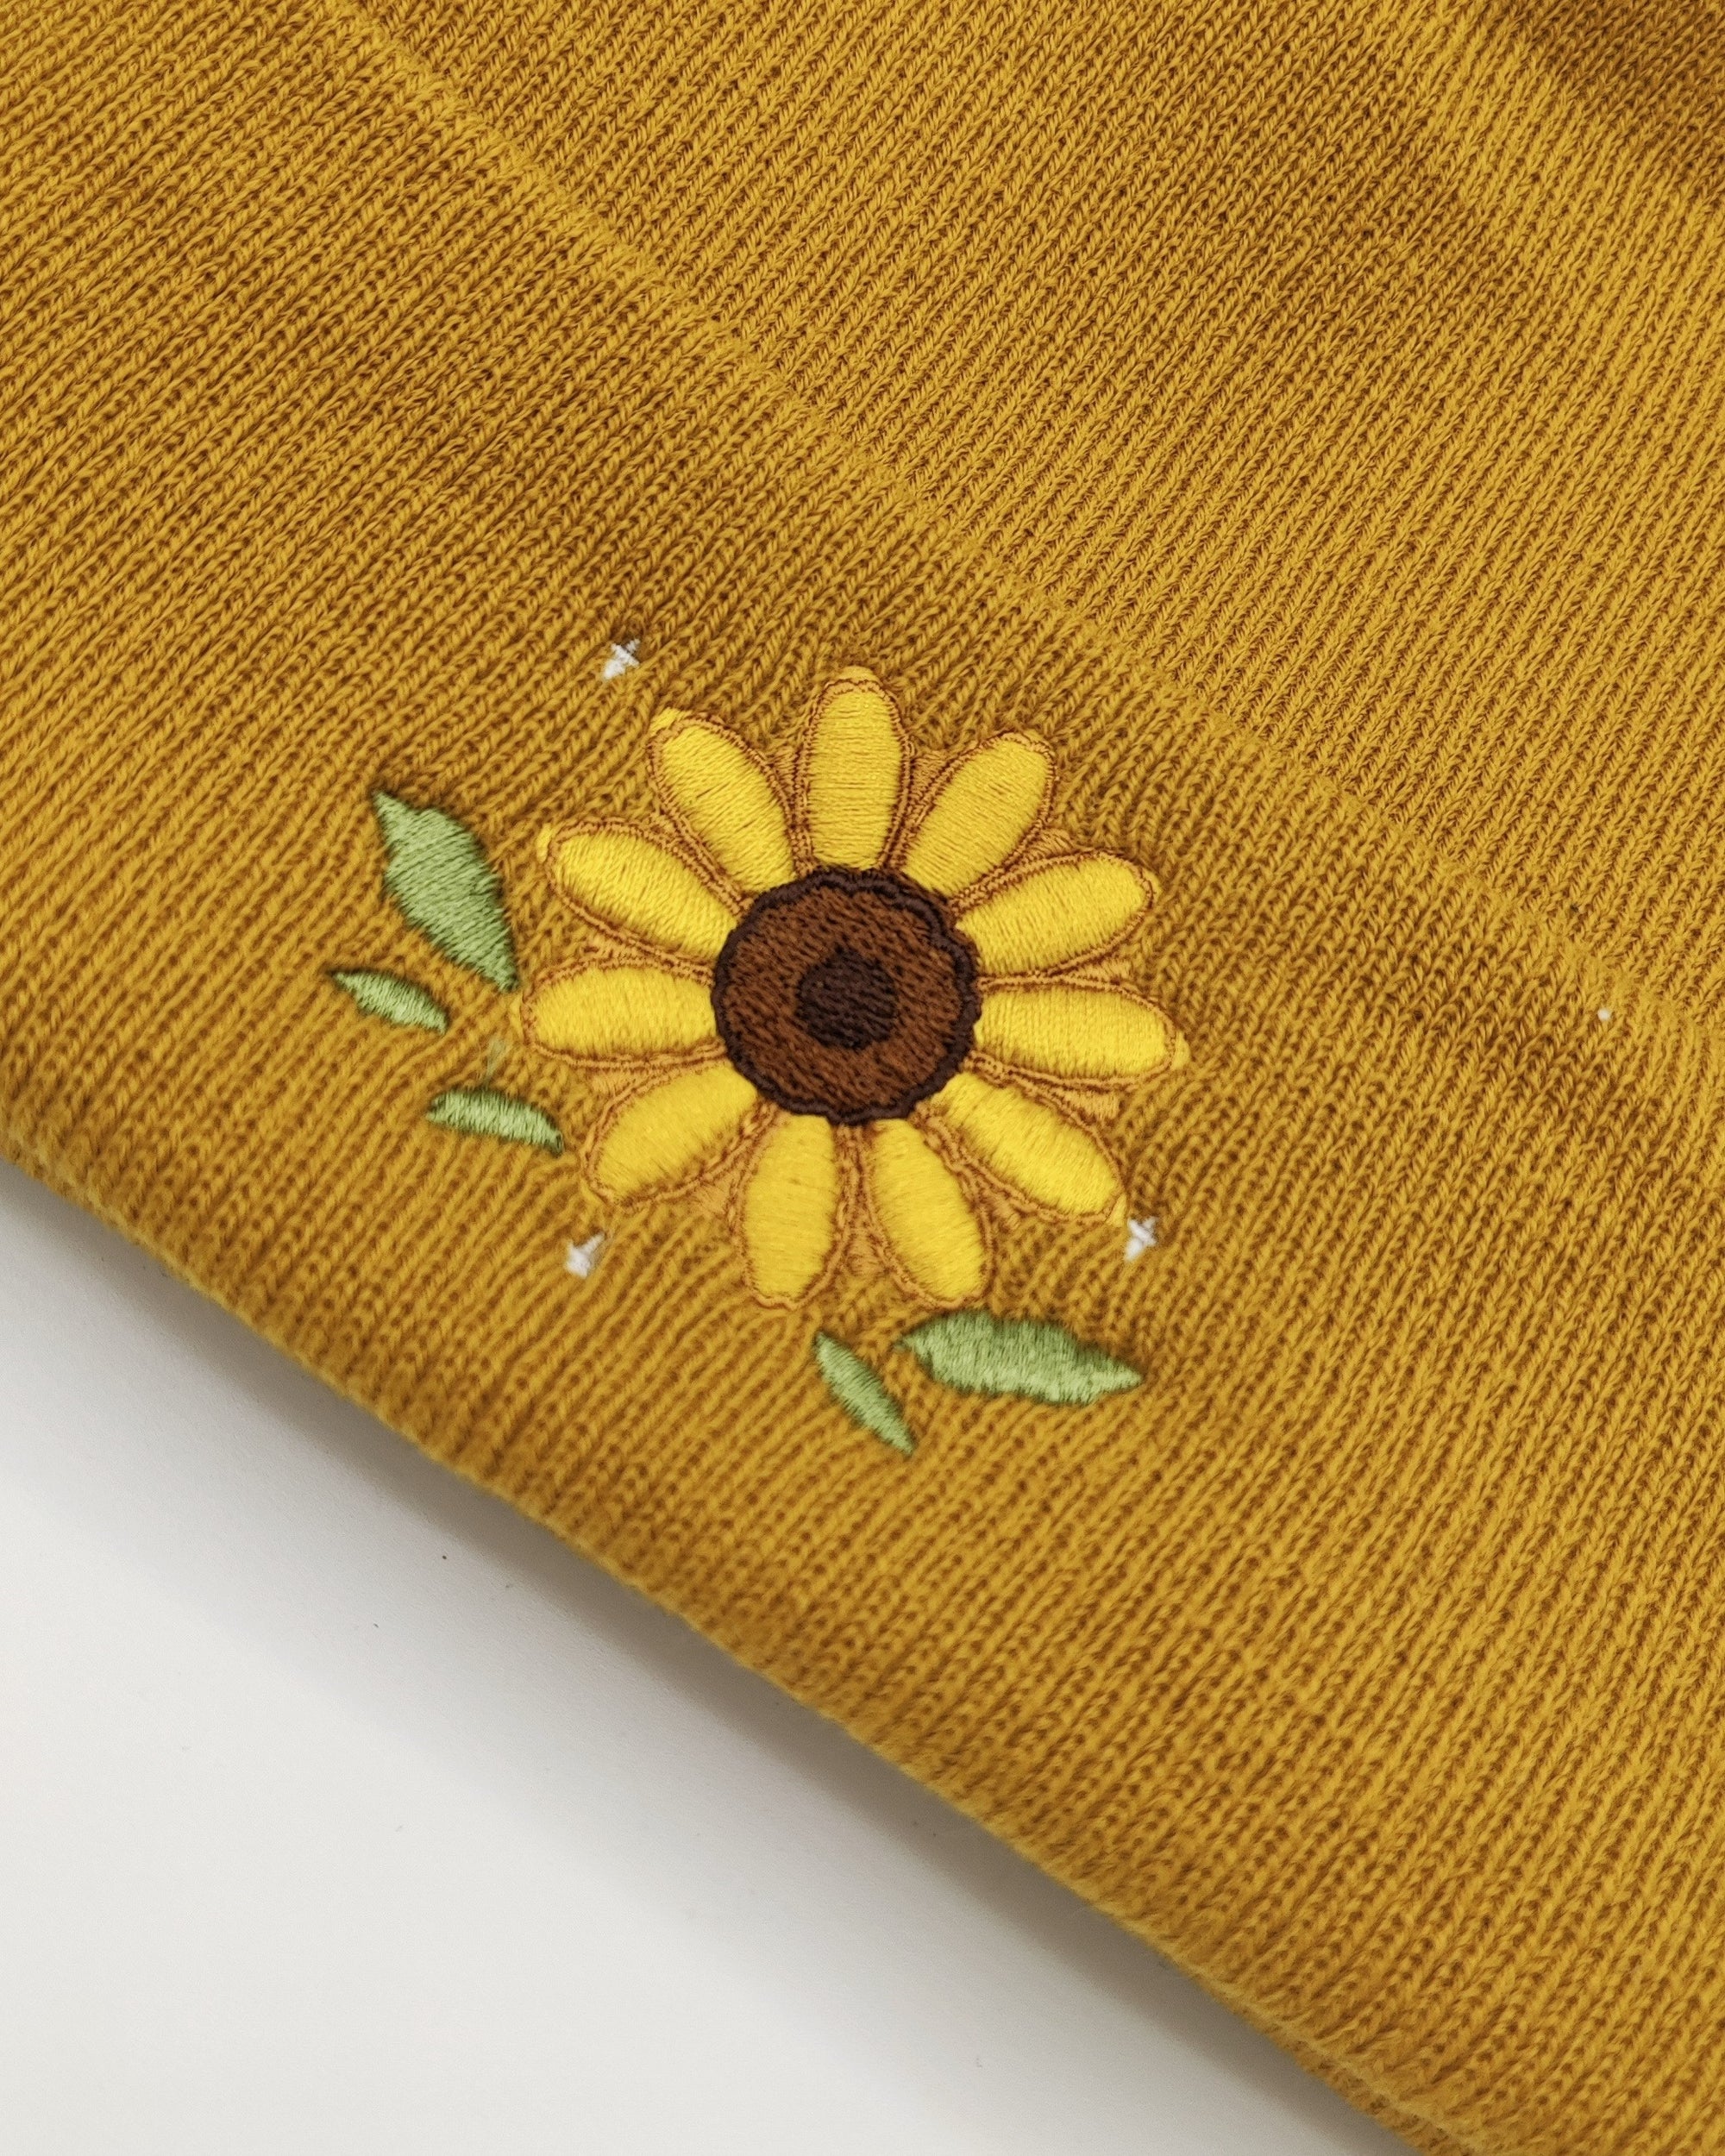 Sunflower beanie